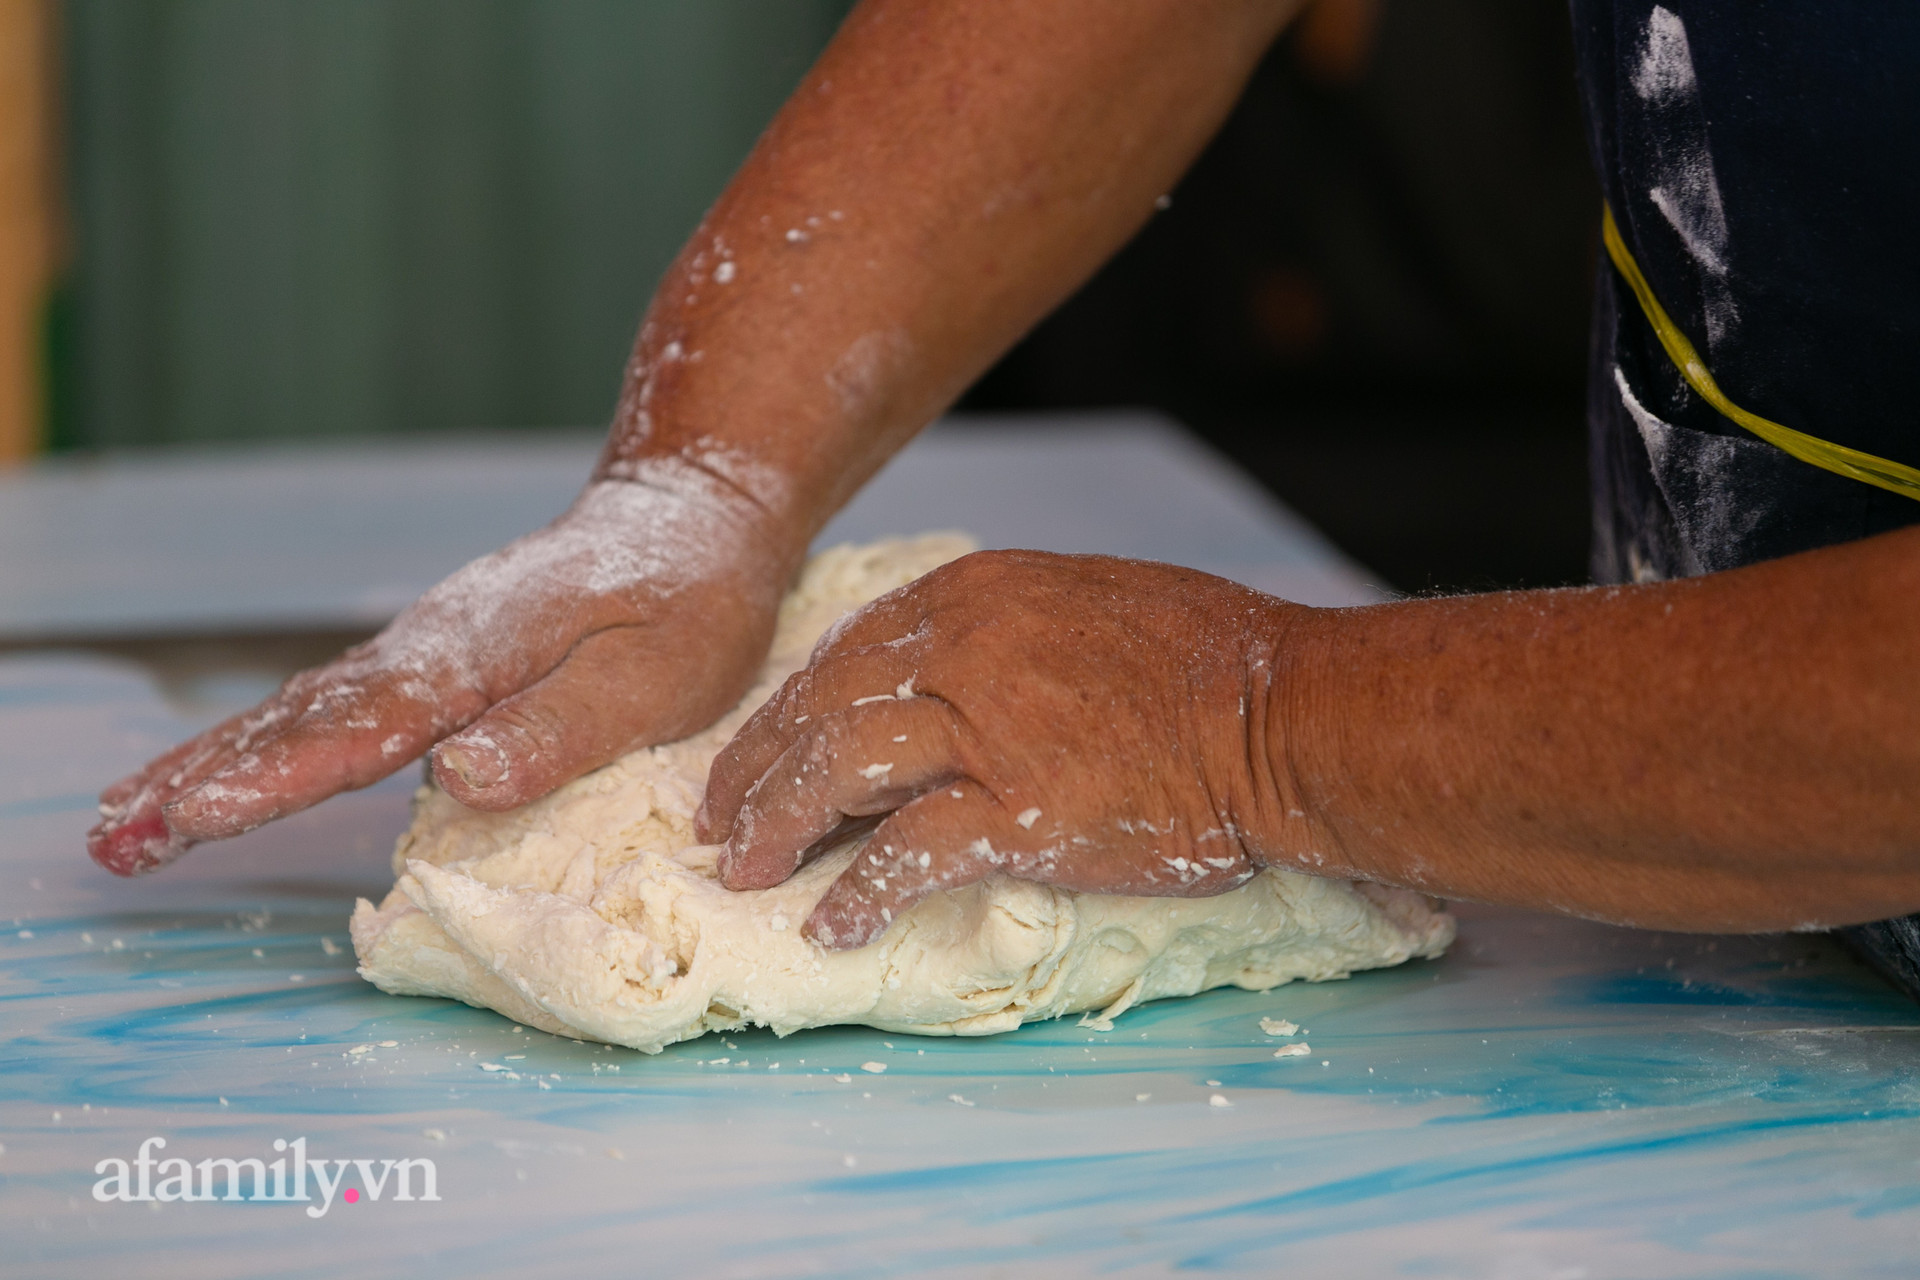 Độc đáo bánh lựu cầu duyên truyền thống của người Hoa ở Sài Gòn: Chỉ bán duy nhất một lần trong năm, 4 người phụ làm hơn 1.000 cái mà bán sạch trong 1 tiếng - Ảnh 2.